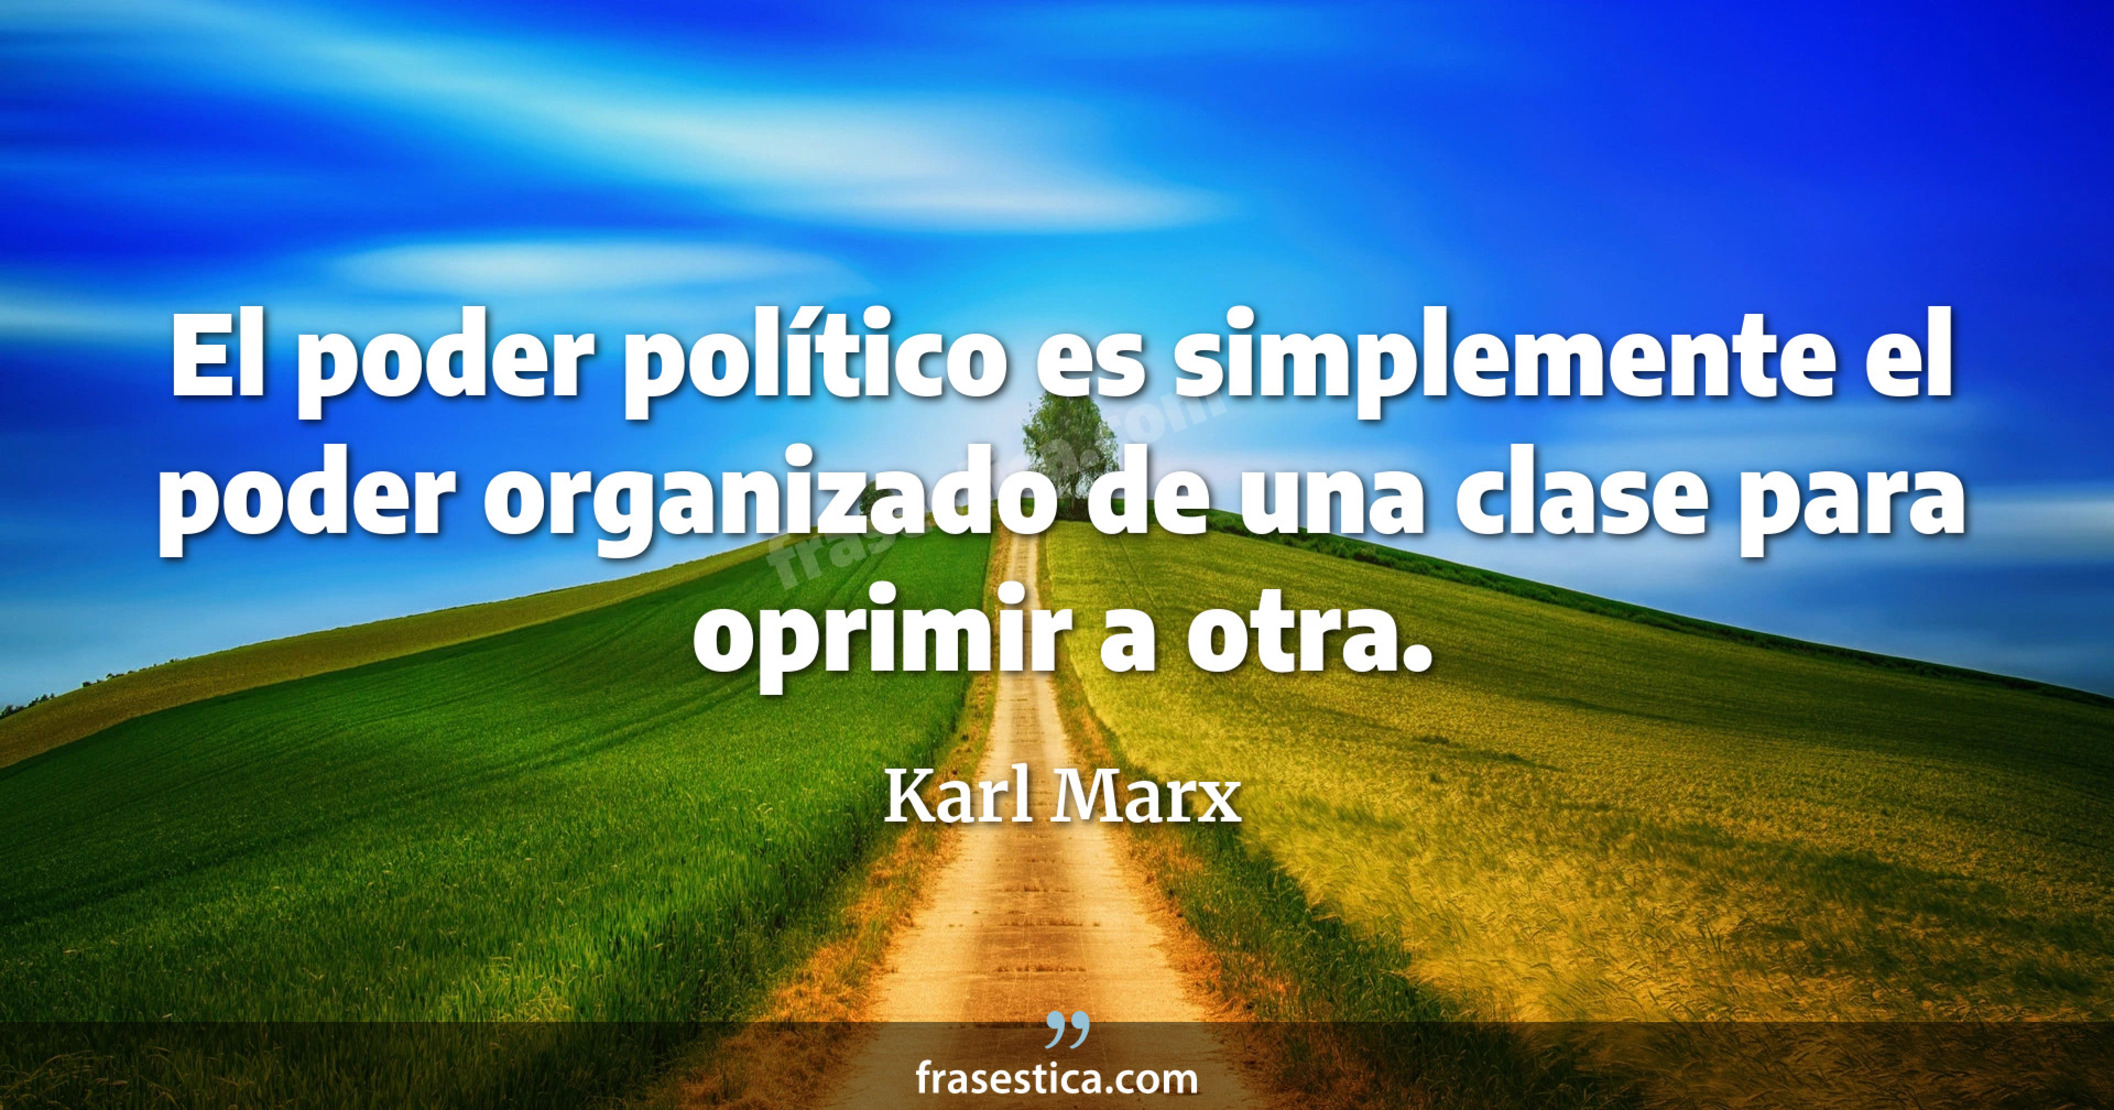 El poder político es simplemente el poder organizado de una clase para oprimir a otra. - Karl Marx